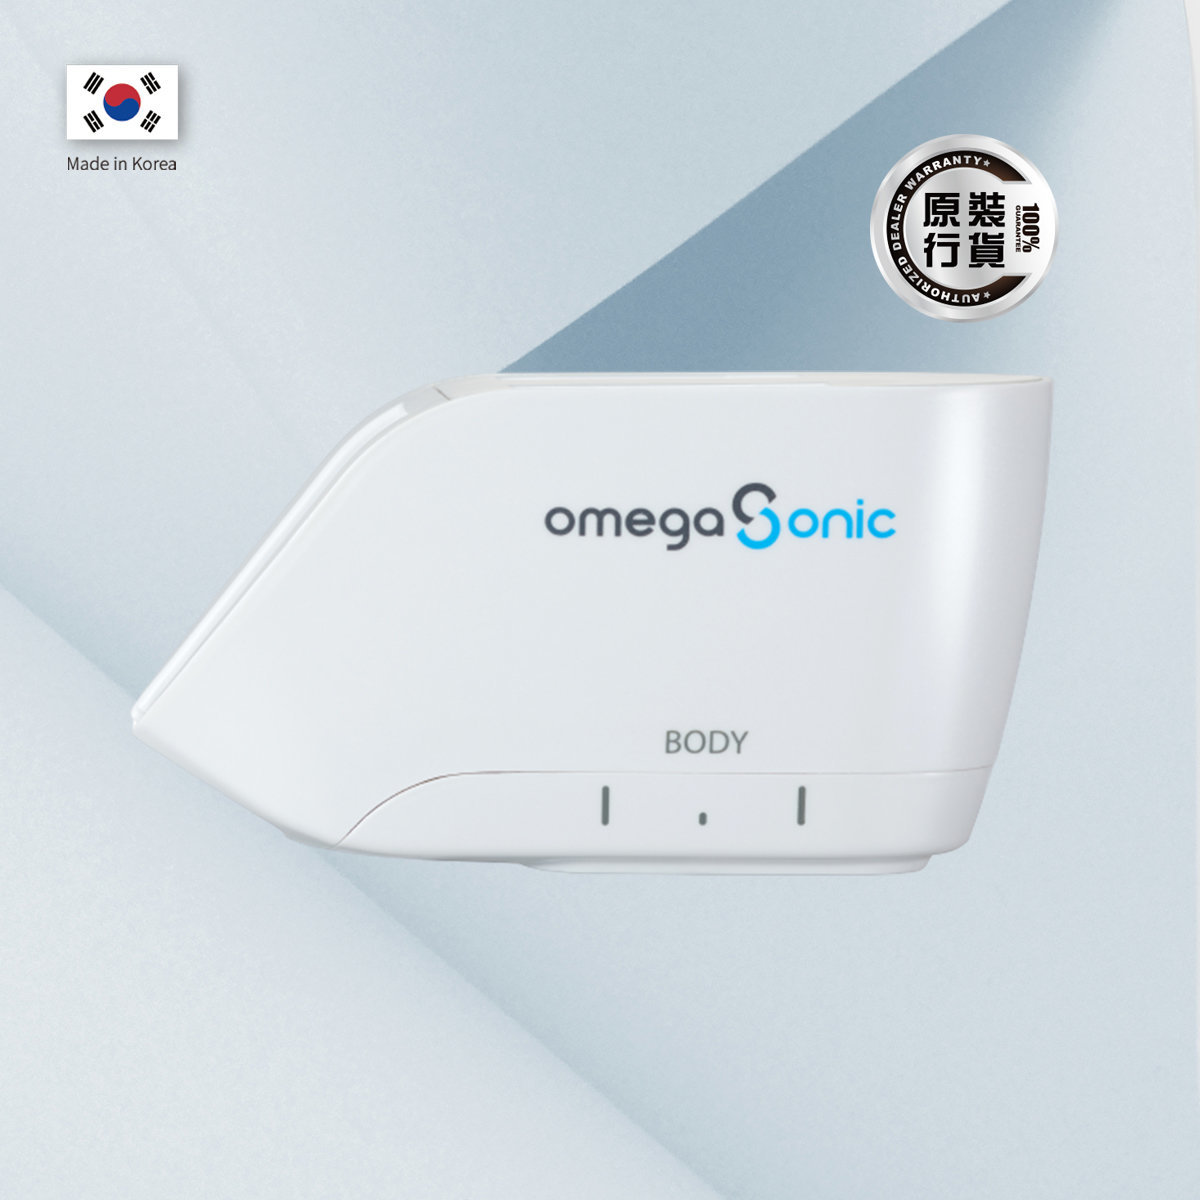 Omega Sonic HIFU家用塑顏儀 - 身體機頭  6.0 mm